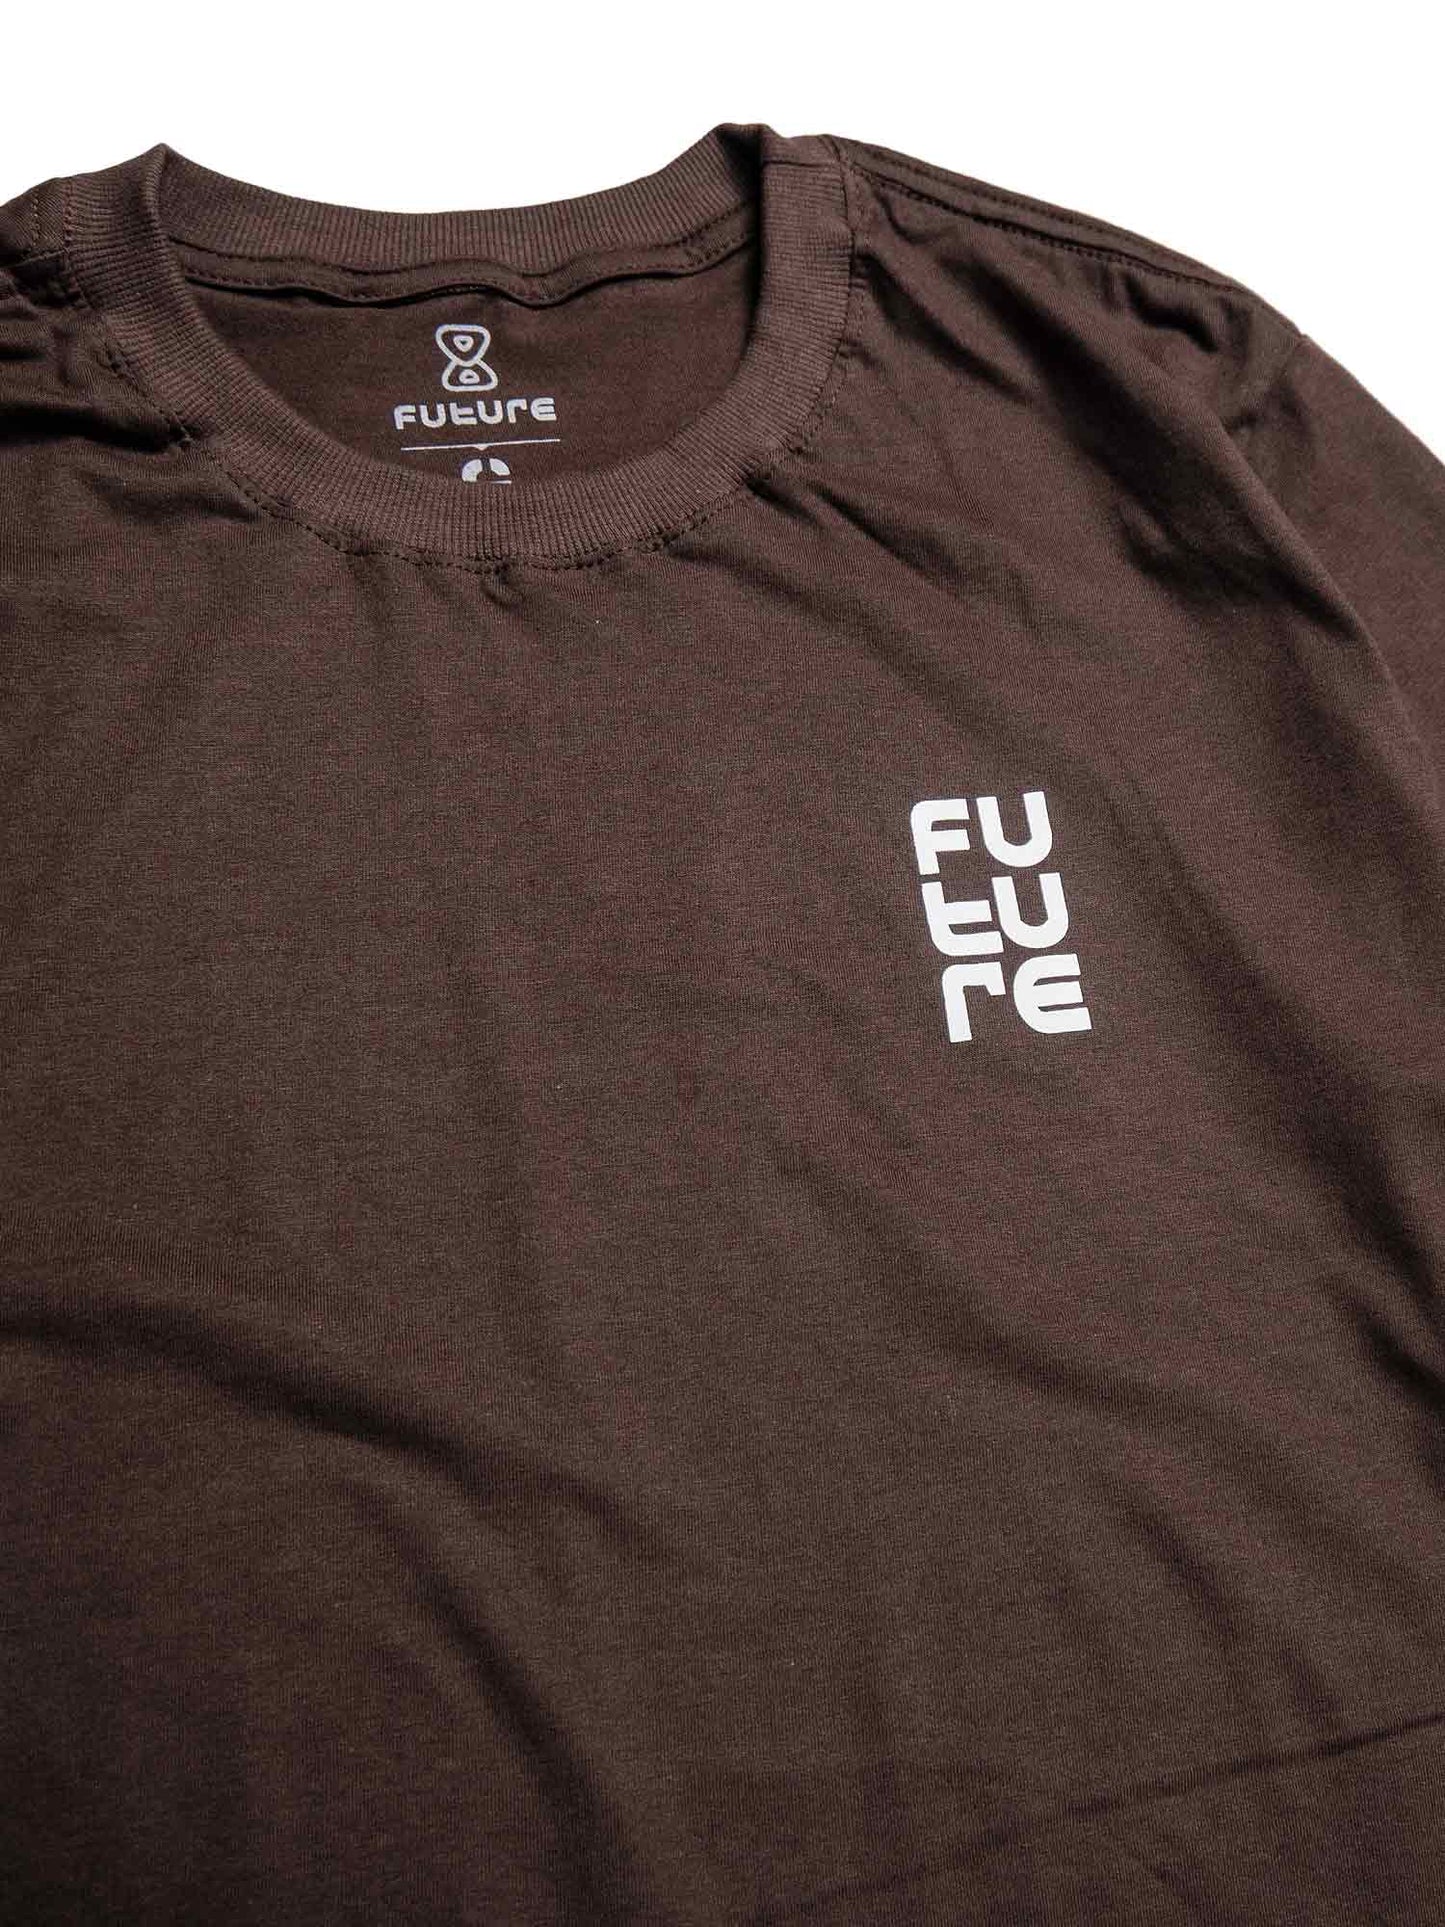 Camiseta-Future-Texturized-Marrom-Frente-Close